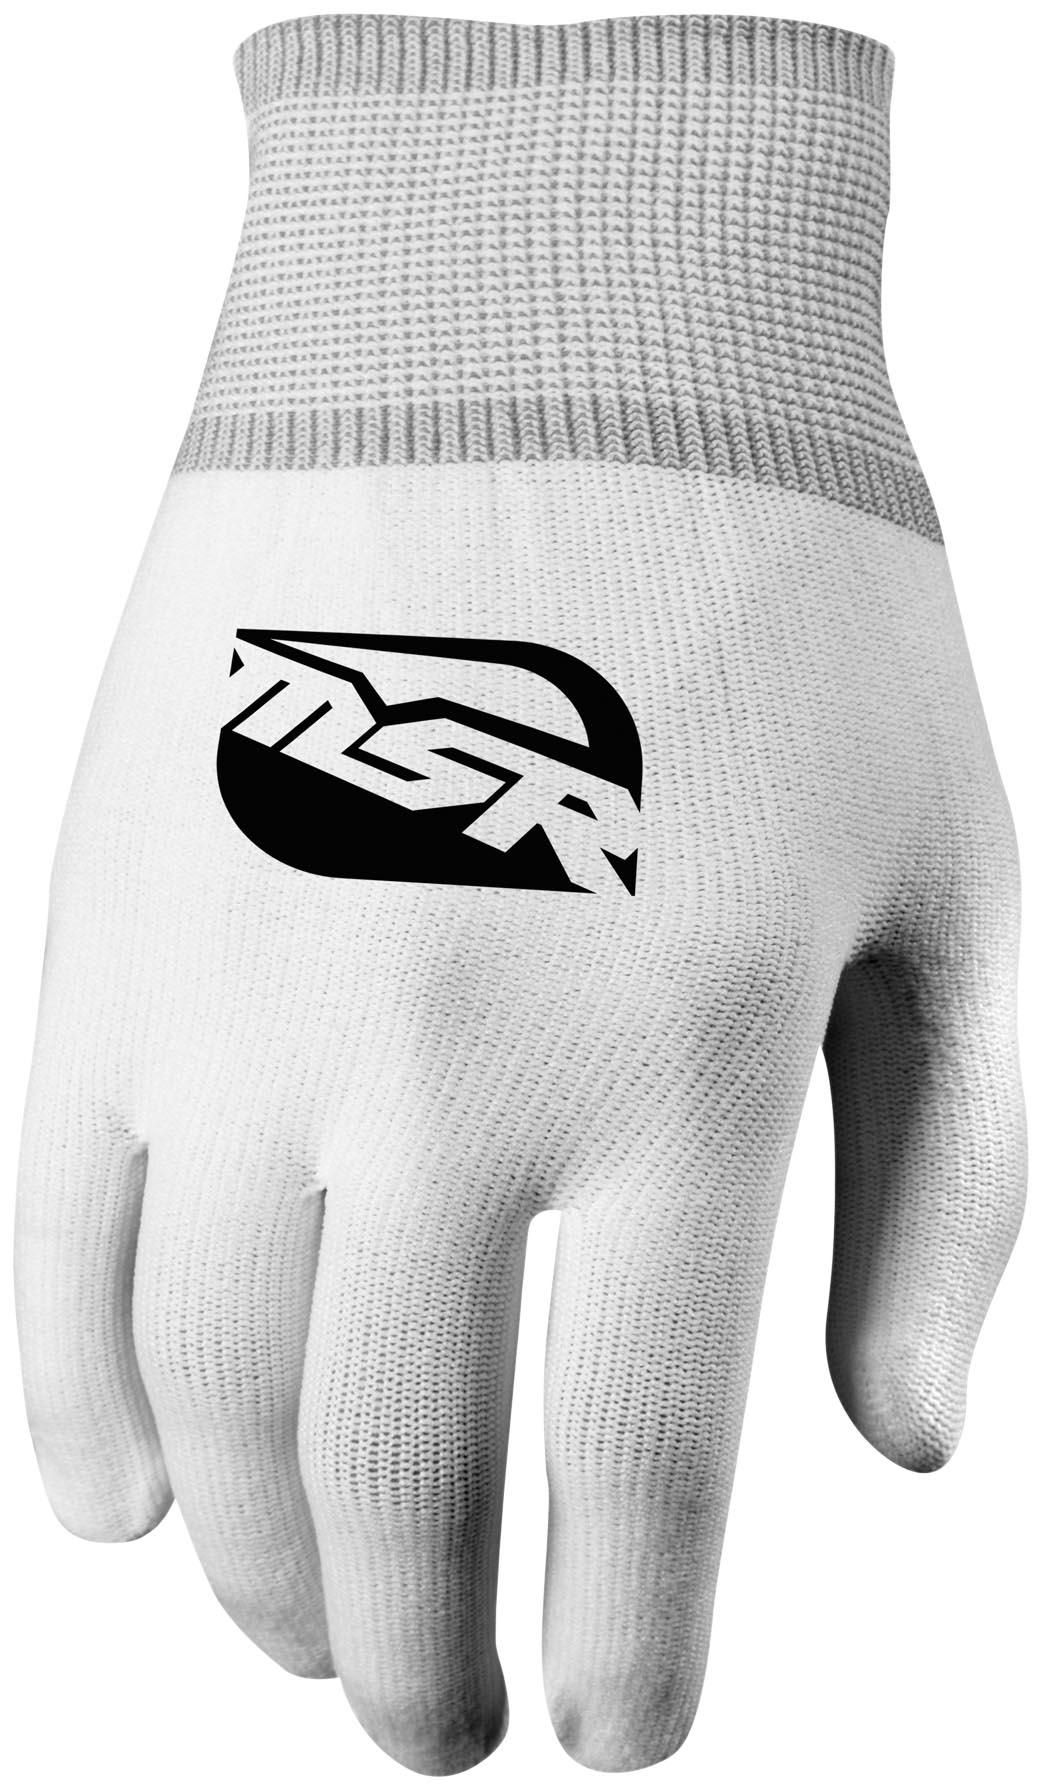 45RQ-MSR-349090 Glove Liner - Full Finger